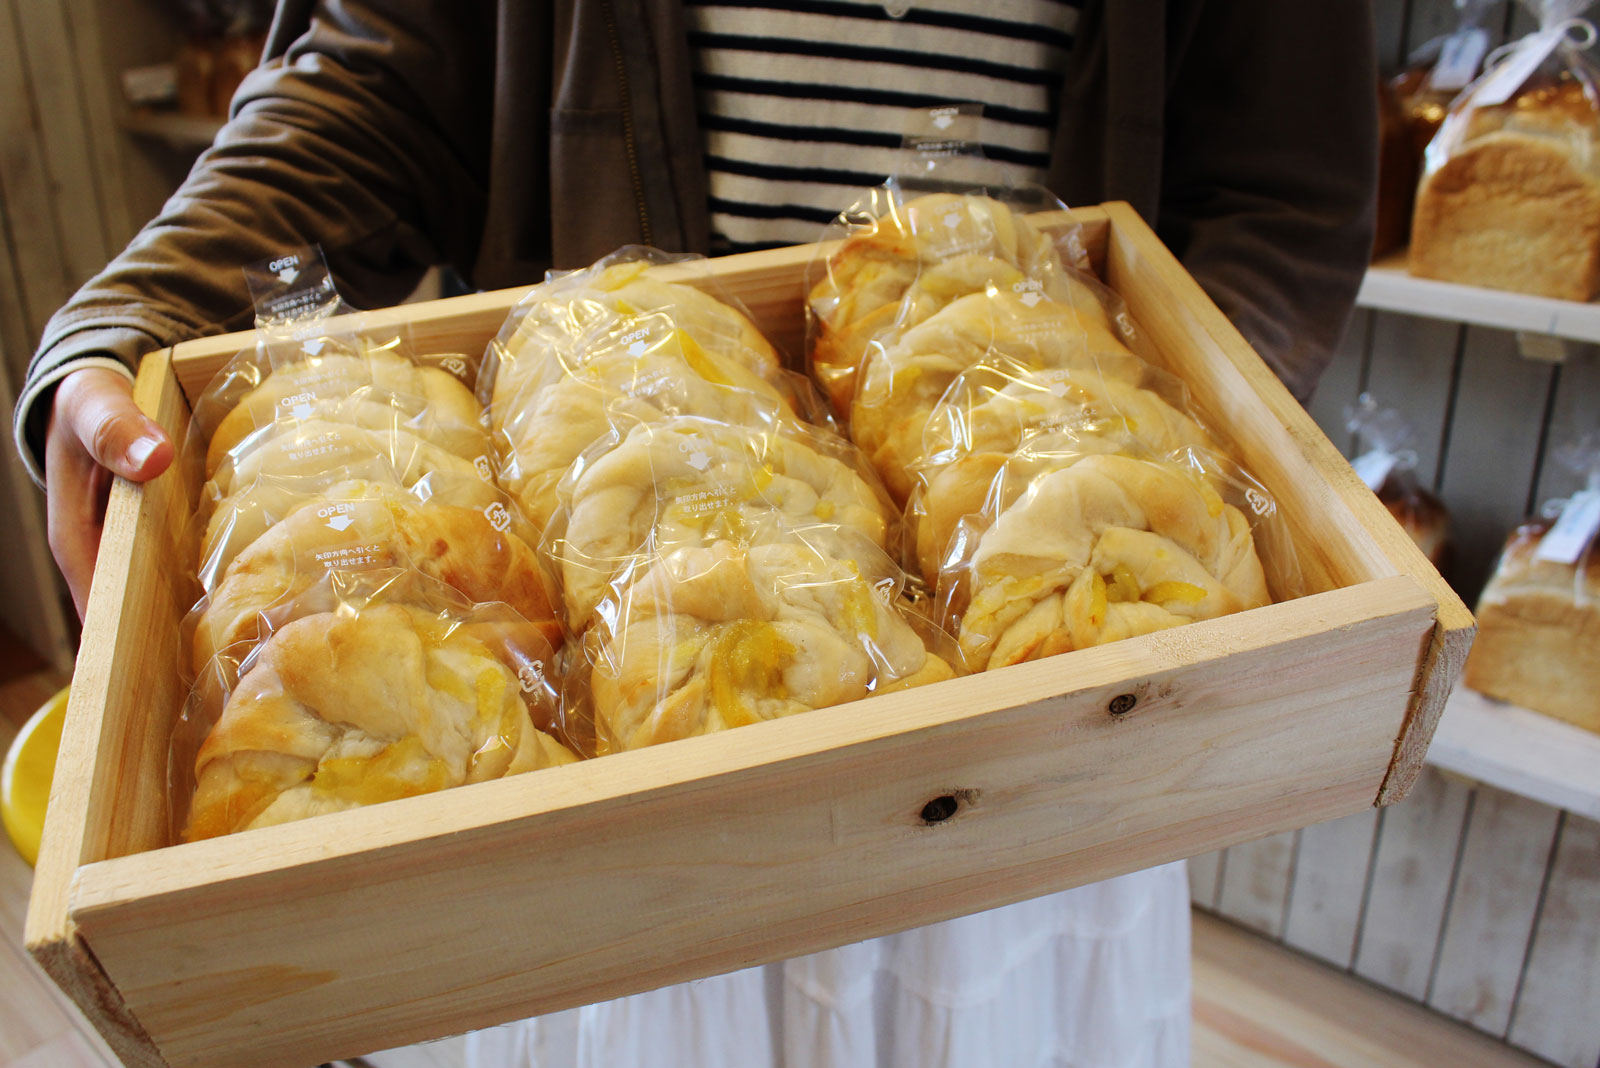 ベーカリスタ 白もくパン 風間史乃さんインタビュー 栃木県 ベイクマ 小規模ベーカリーシェフのためのベイカーズマーケット